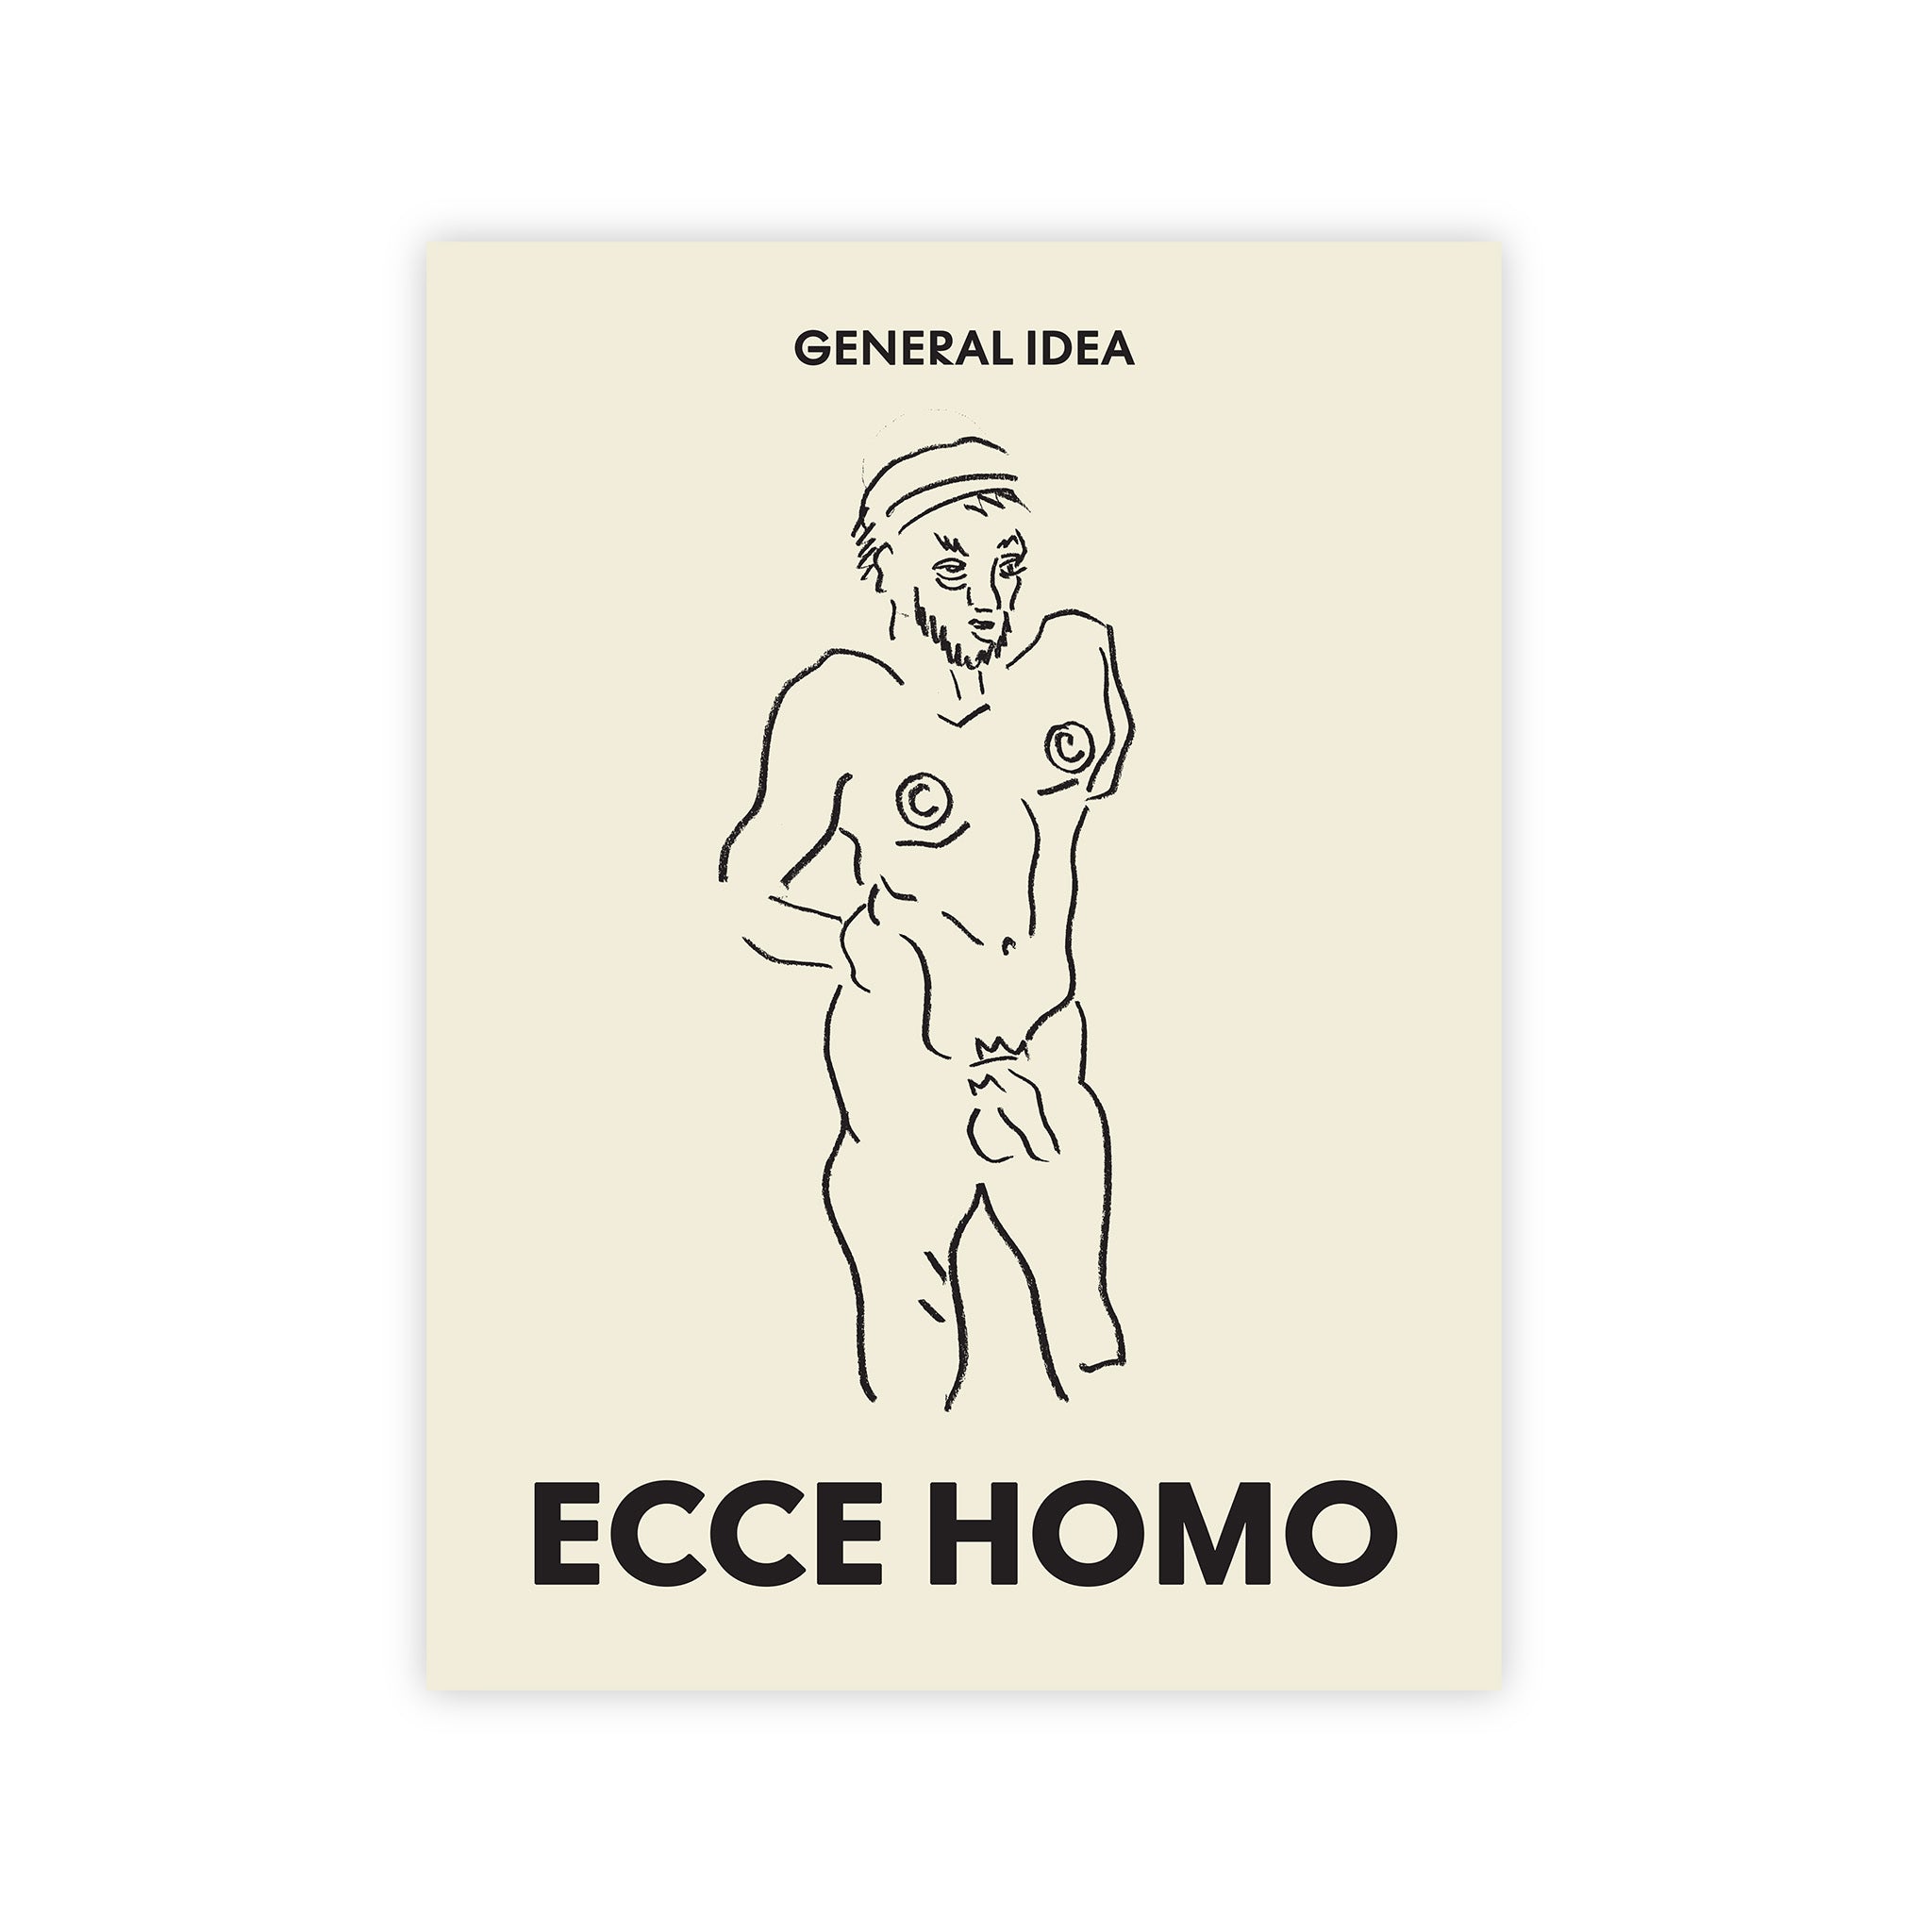 General Idea: Ecce Homo